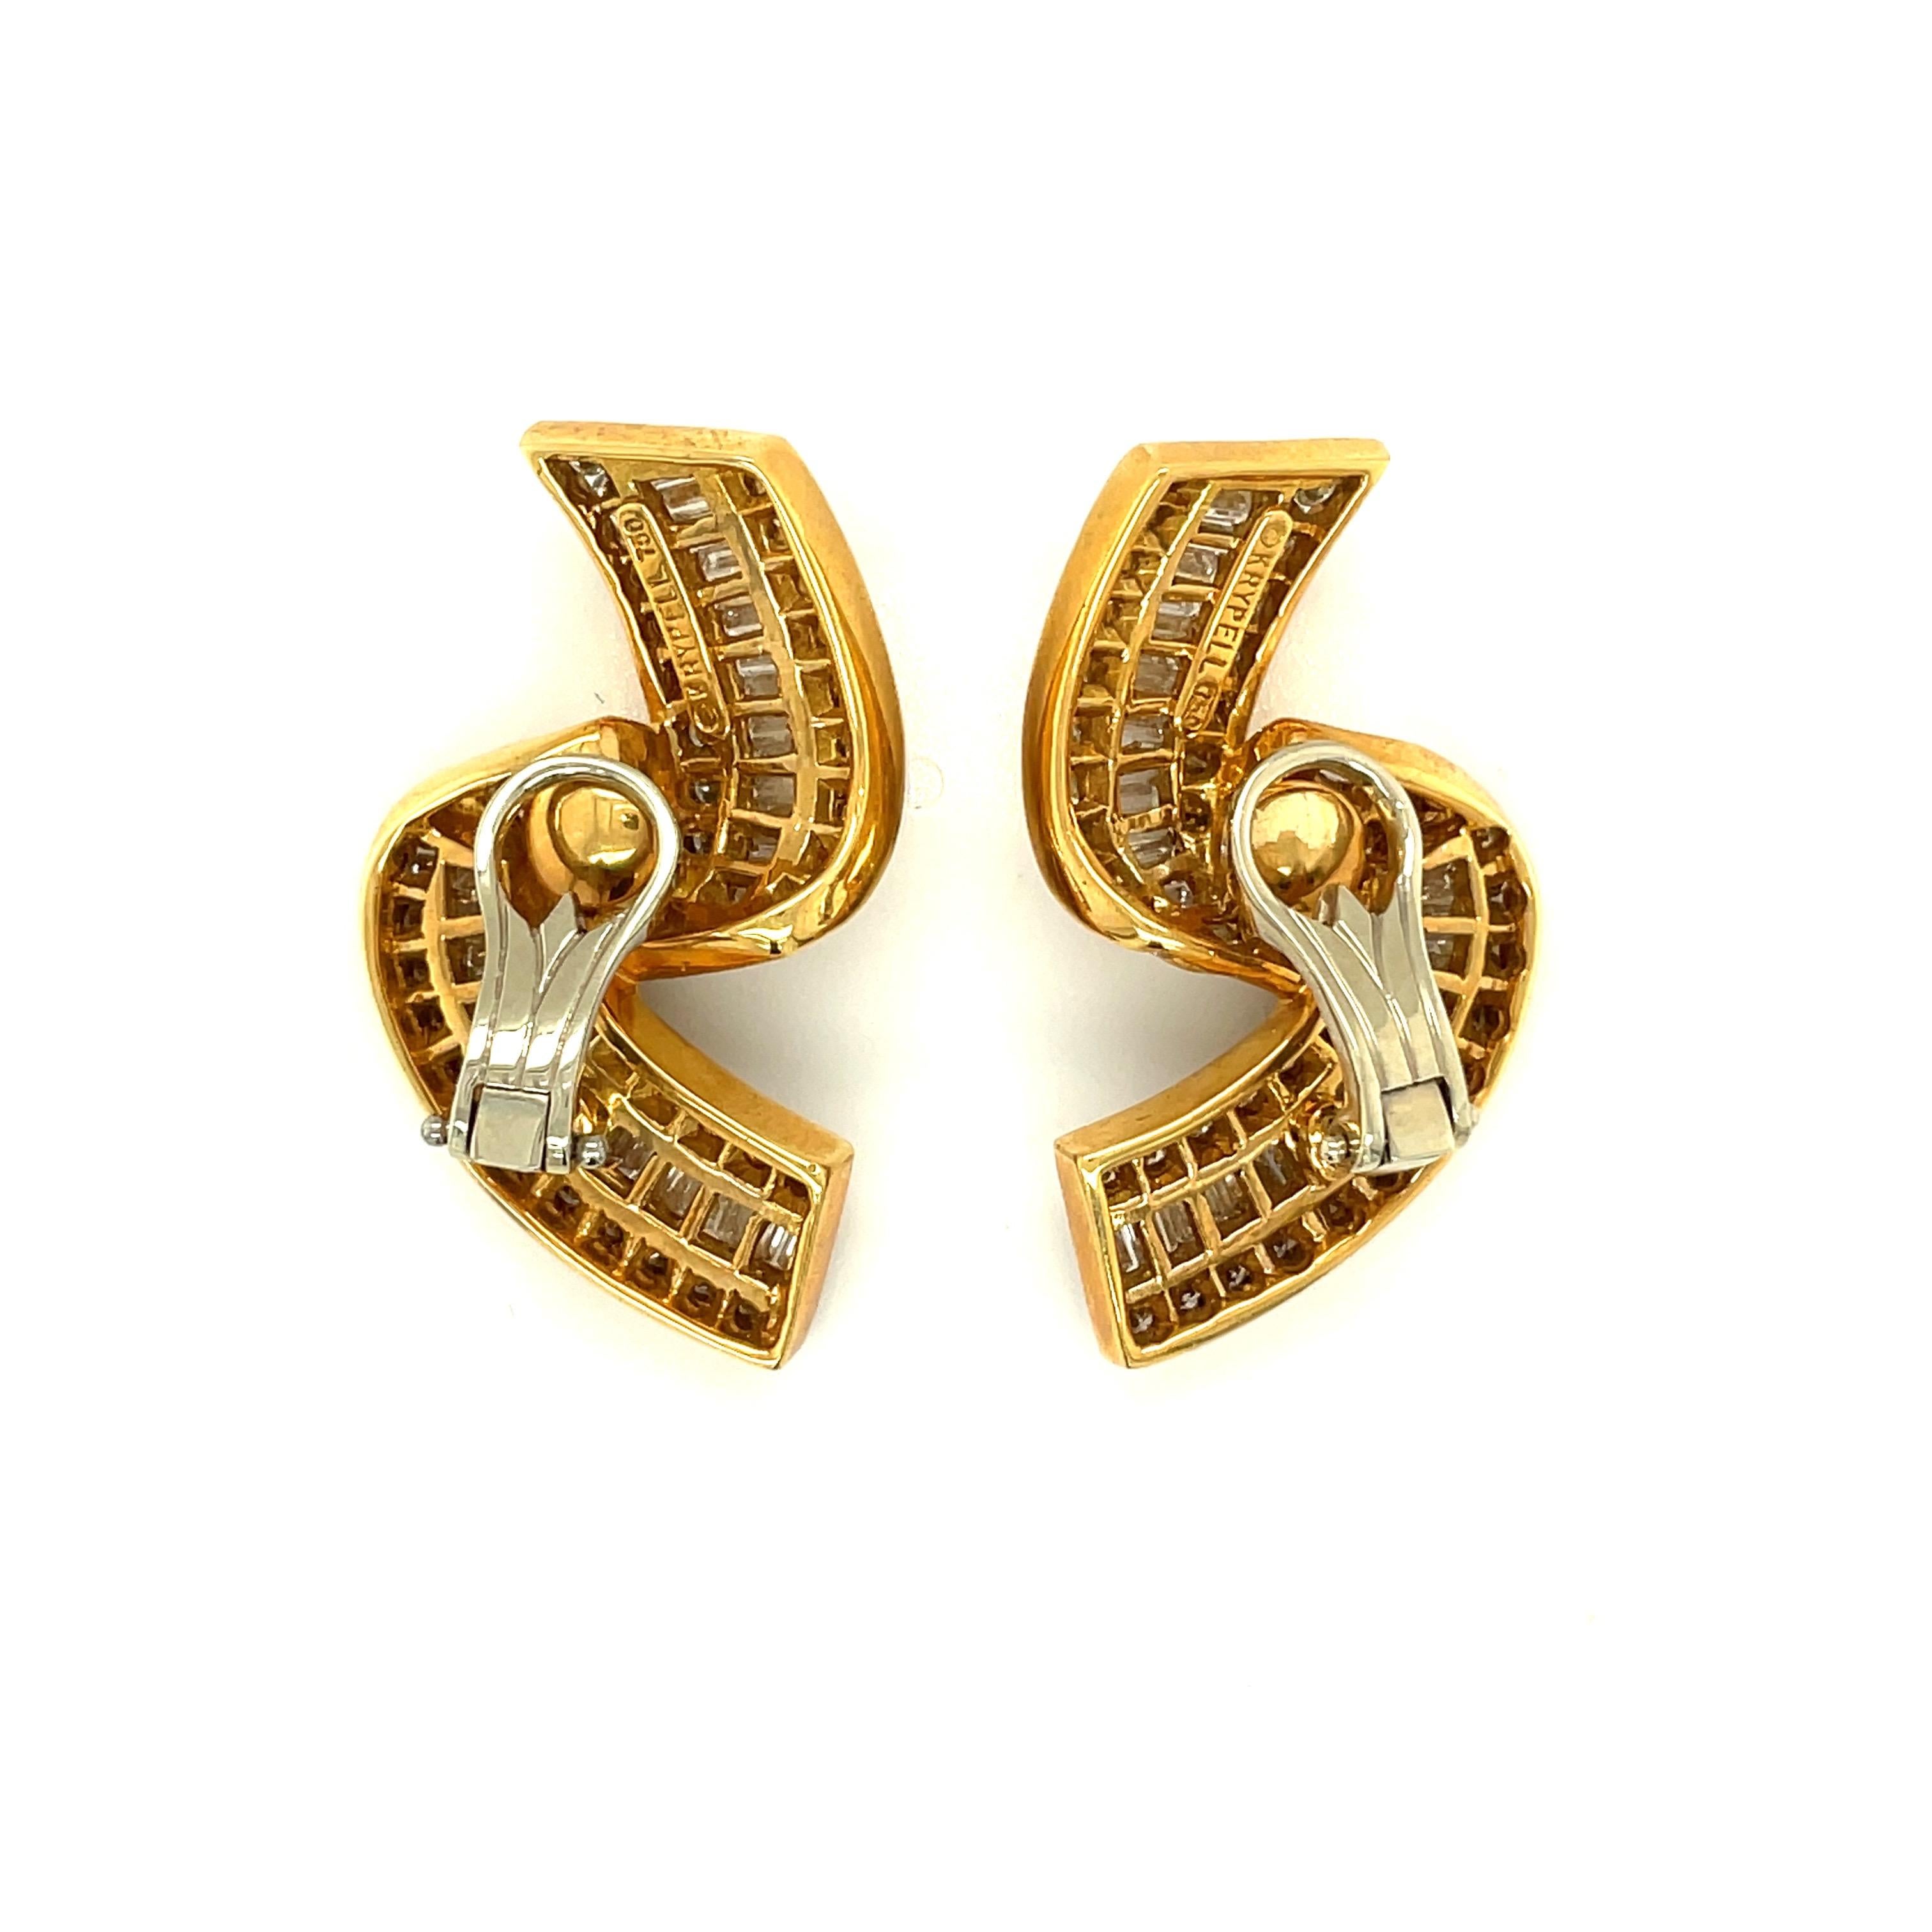 Charles Krypell Jewelry est une marque de joaillerie fine basée à New York qui s'est fait connaître au niveau international pour son utilisation exquise de la couleur, ses conceptions originales et son savoir-faire exceptionnel. 
Montées en or jaune